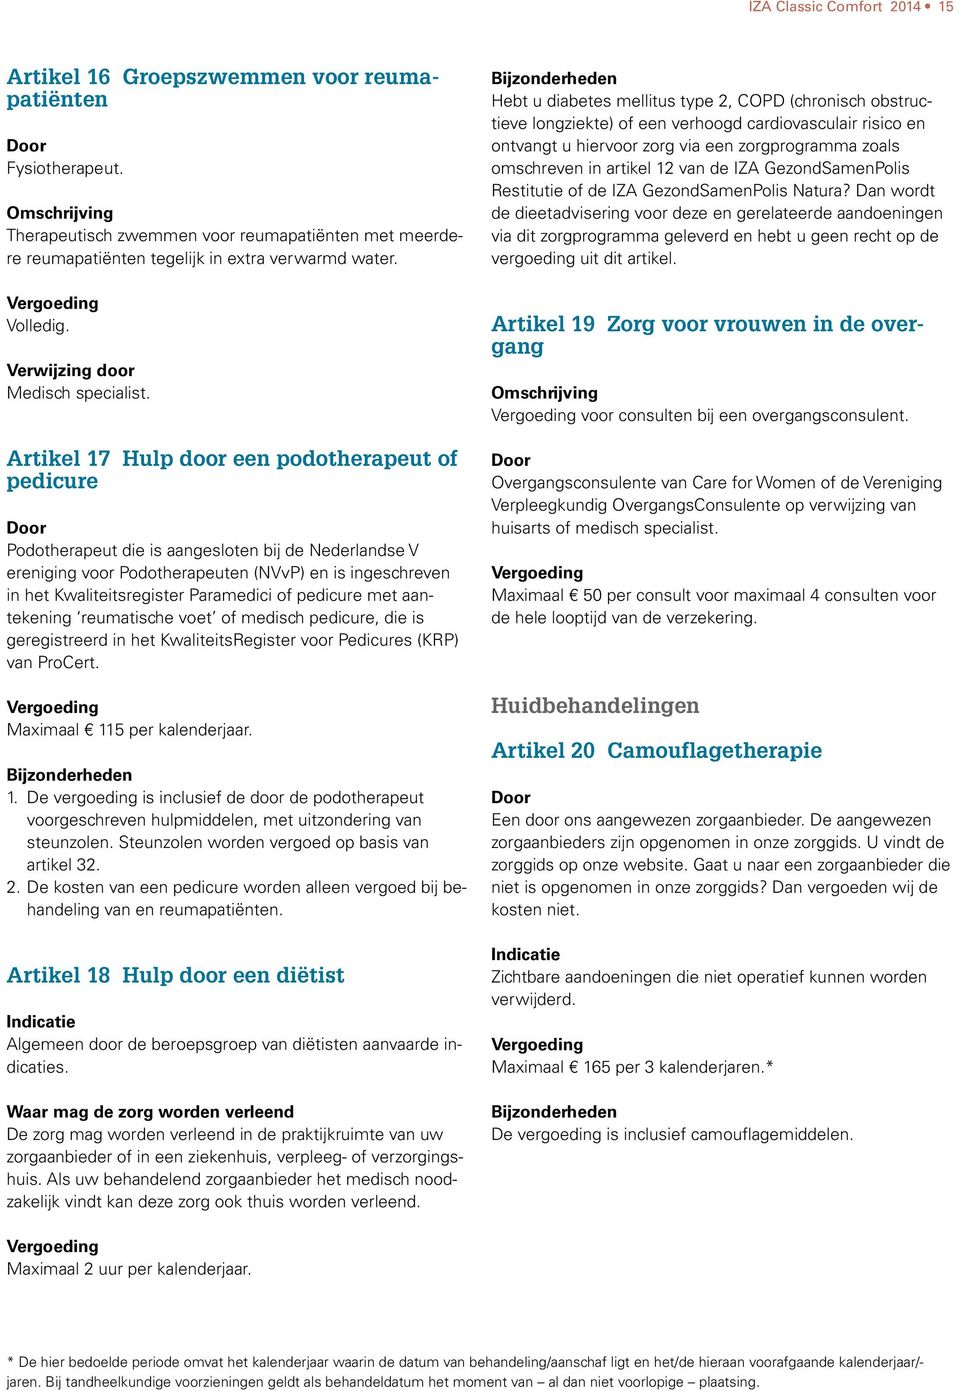 Artikel 17 Hulp door een podotherapeut of pedicure Podotherapeut die is aangesloten bij de Nederlandse V ereniging voor Podotherapeuten (NVvP) en is ingeschreven in het Kwaliteitsregister Paramedici